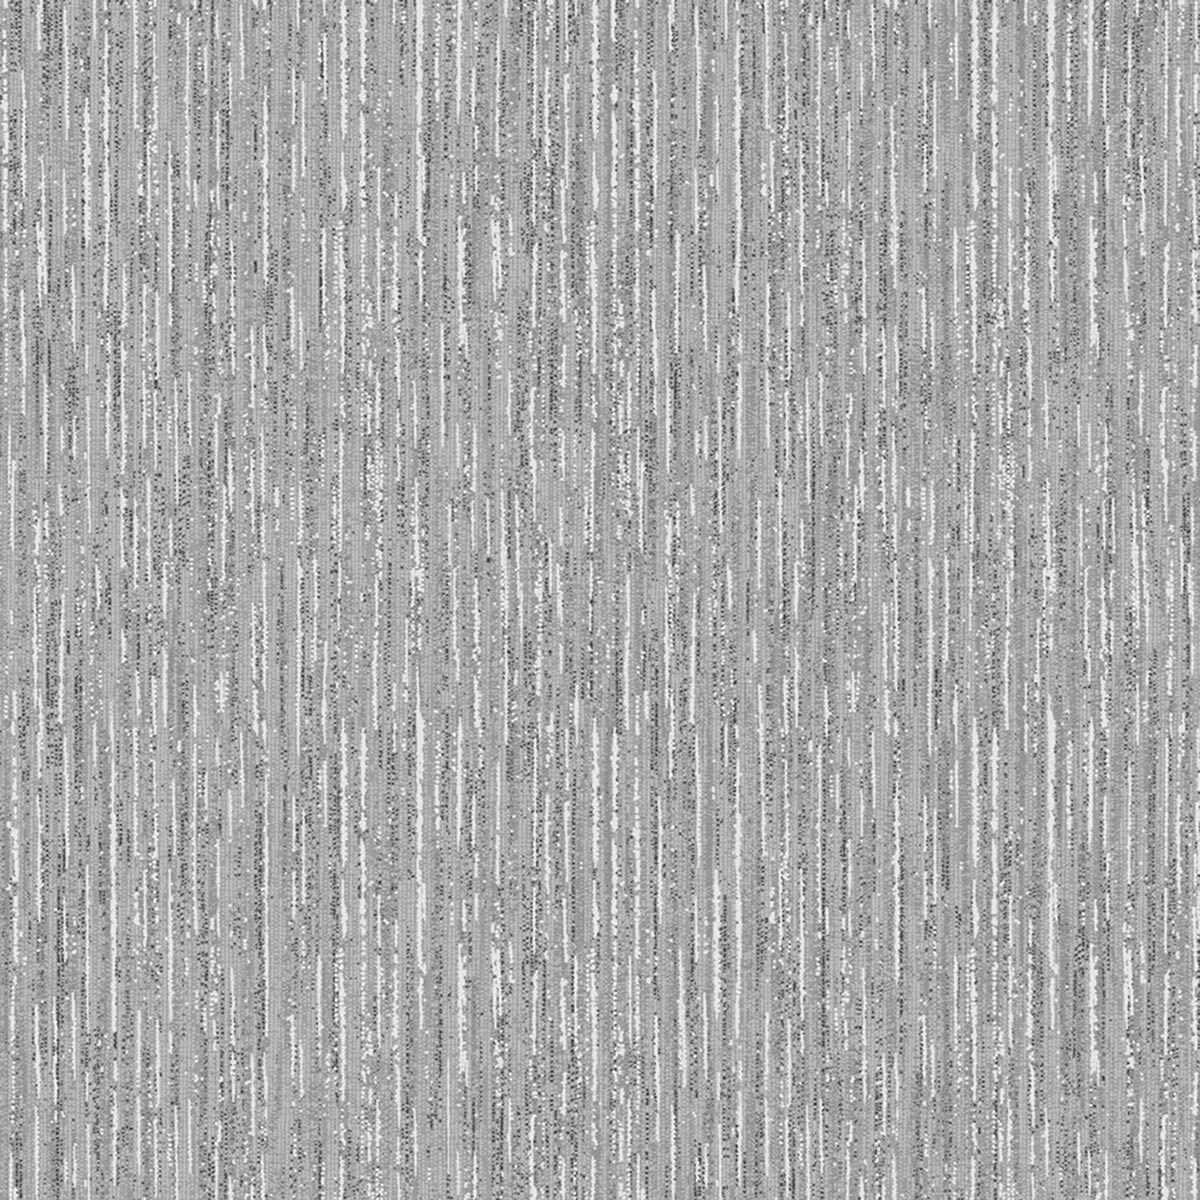 Concrete Textured Dark Grey Wallpaper  Decorating Centre Online